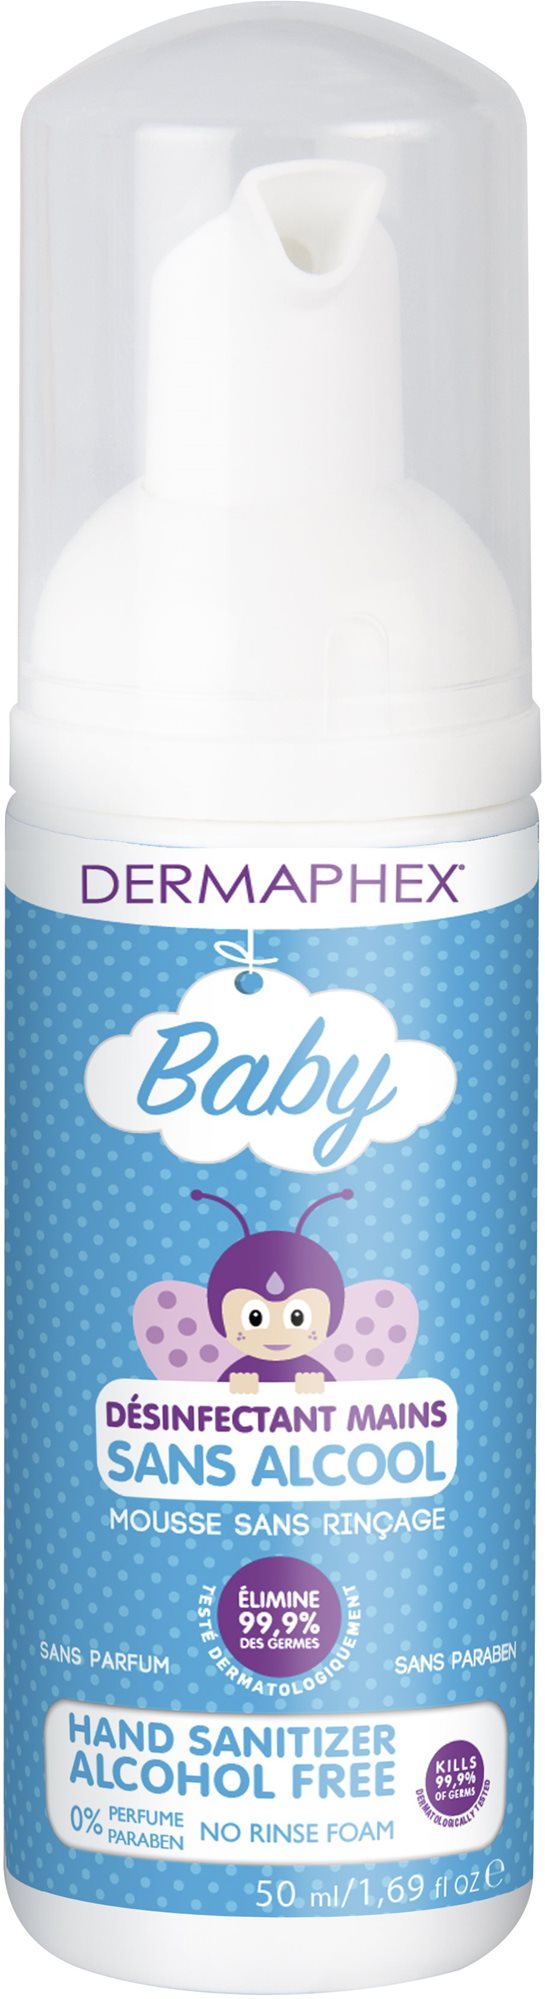 DermAphex BABY 50 ml